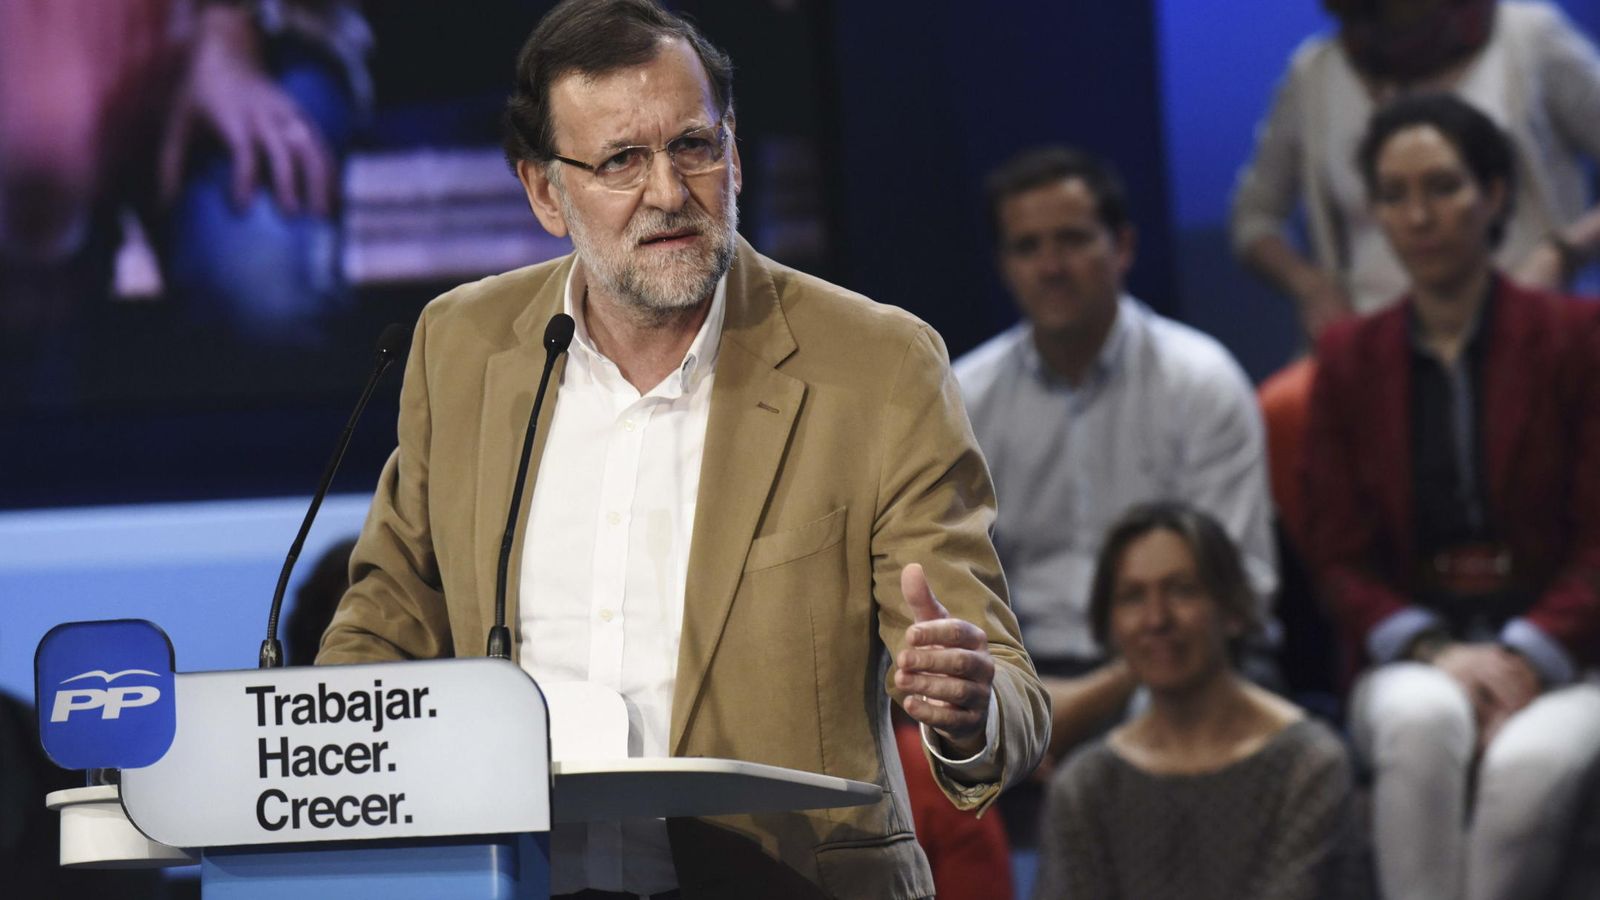 Foto: El presidente del Gobierno y del Partido Popular, Mariano Rajoy. (EFE)